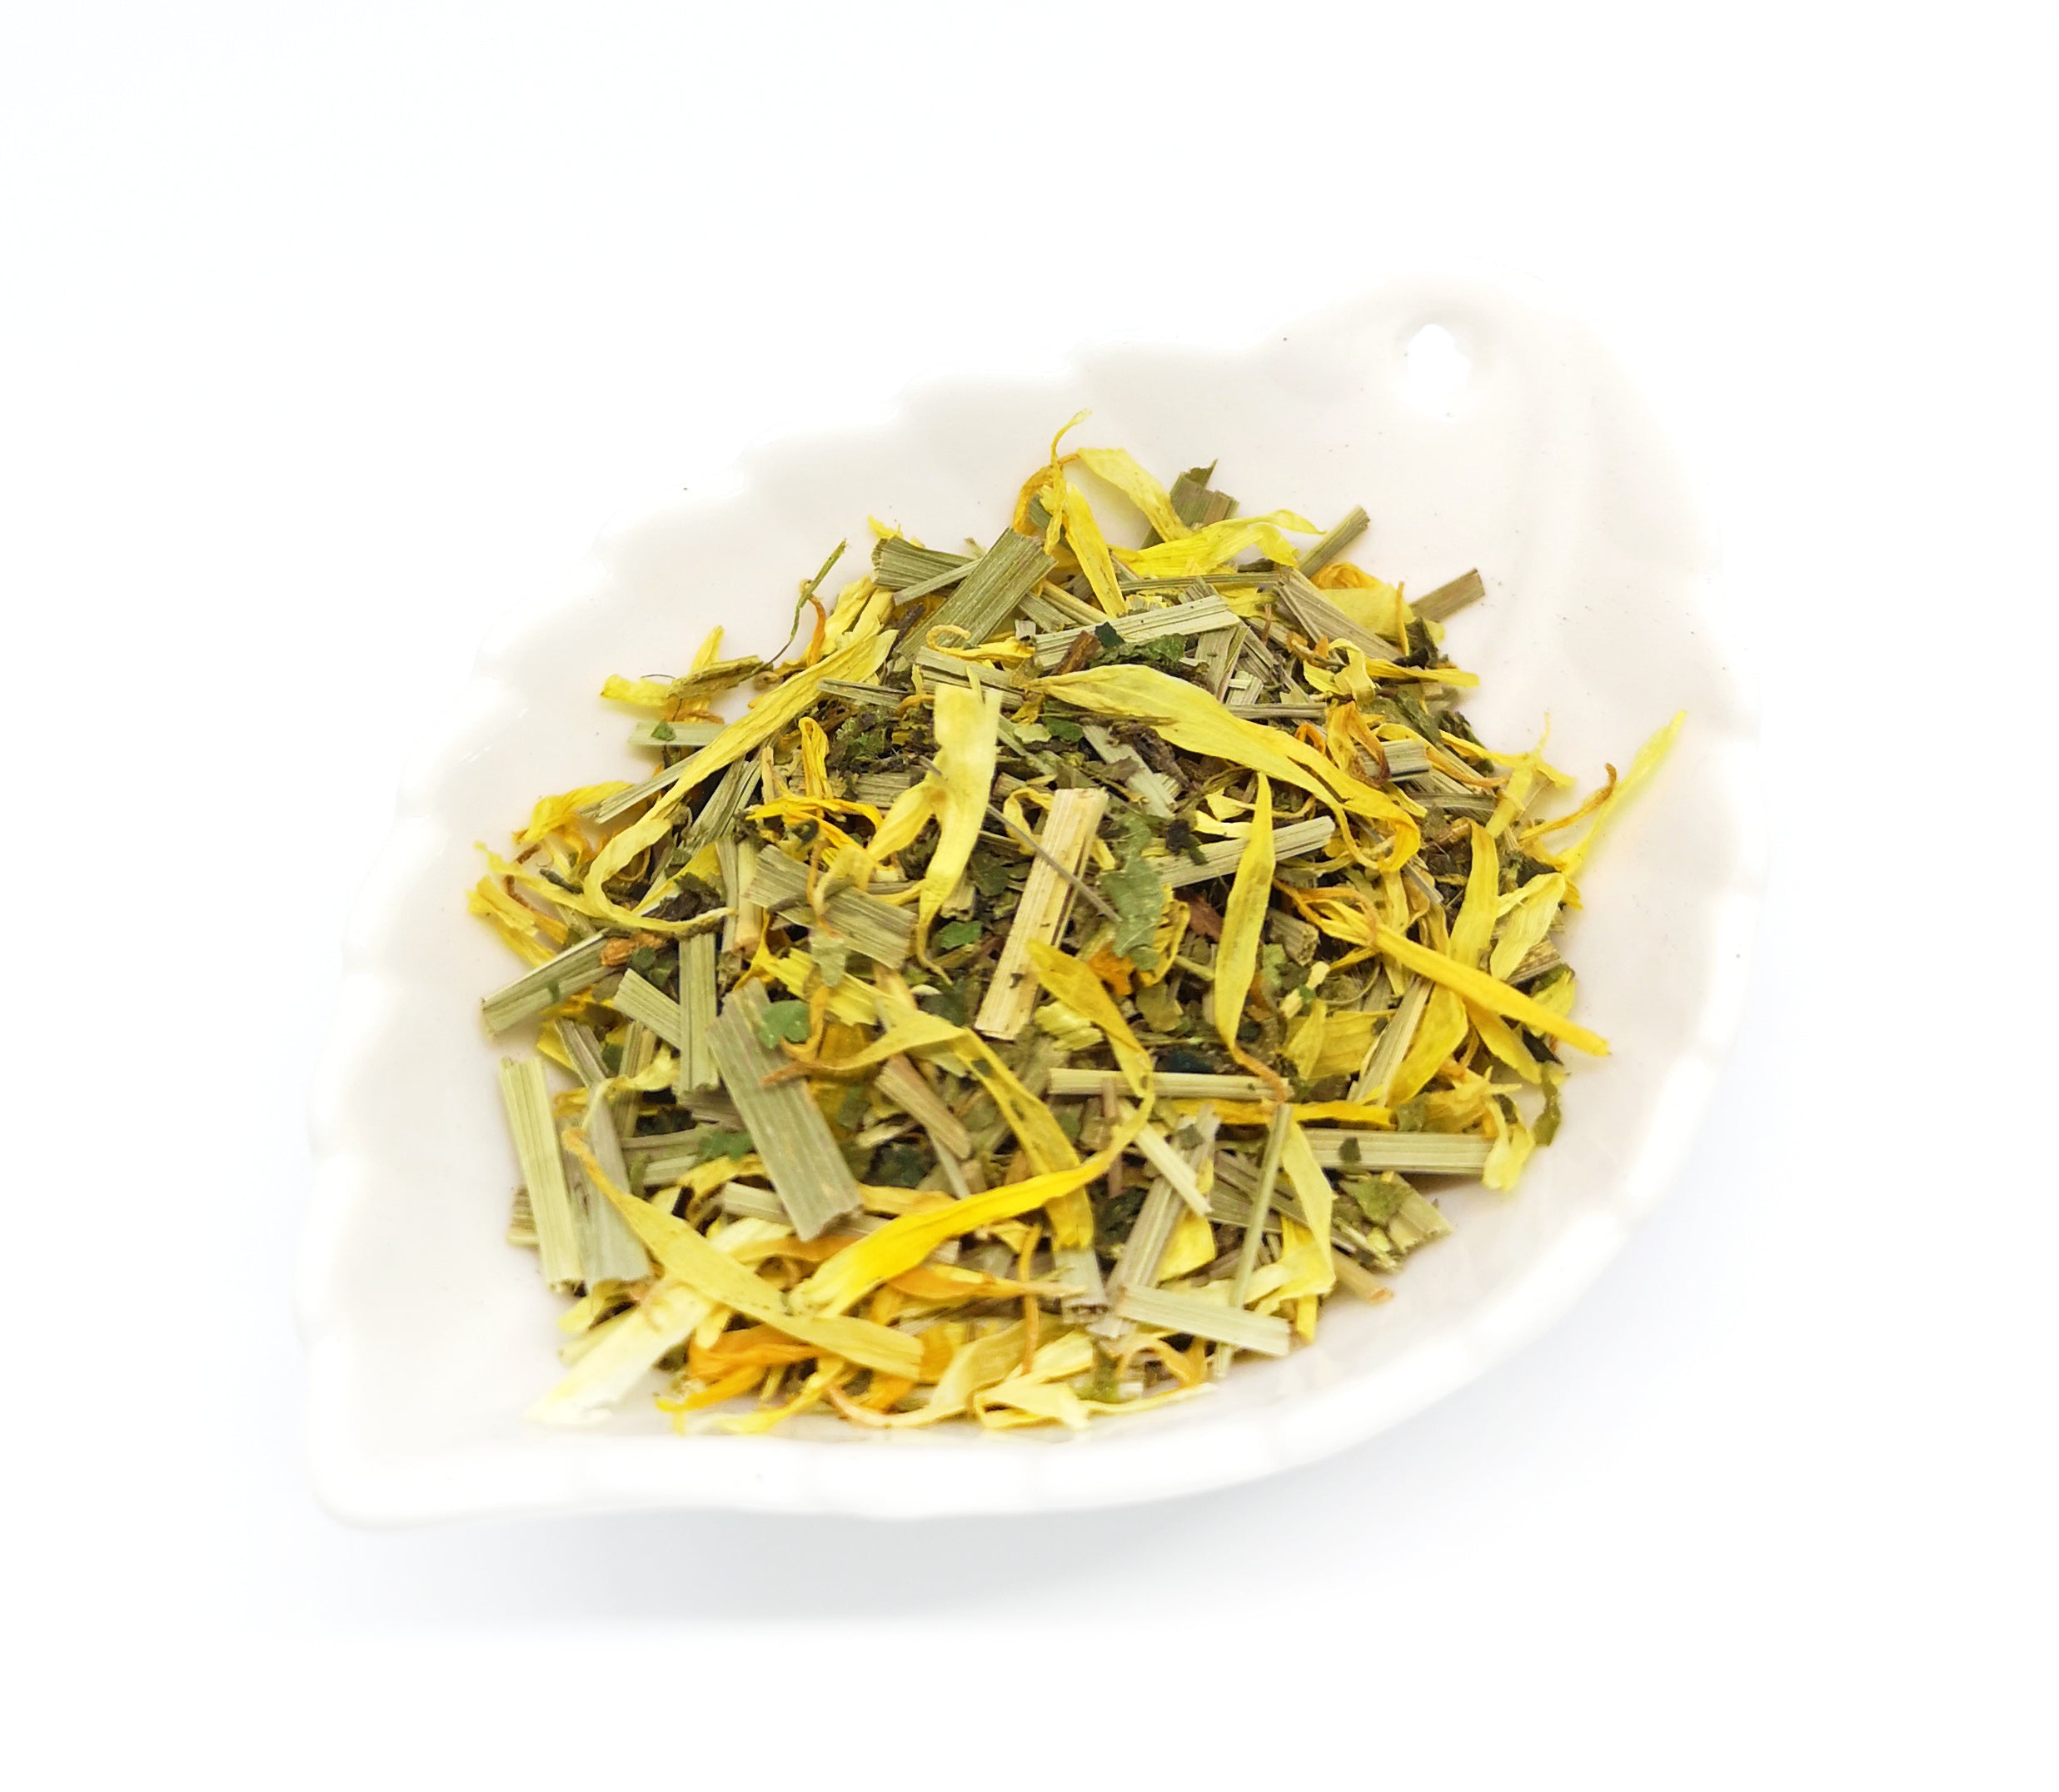 Boîte de thé Détox | 40% de réduction | thé aux herbes pour la perte de poids et la Détox | Maté, Fenouil, Réglisse, Bardane Fenugrec | 63 G